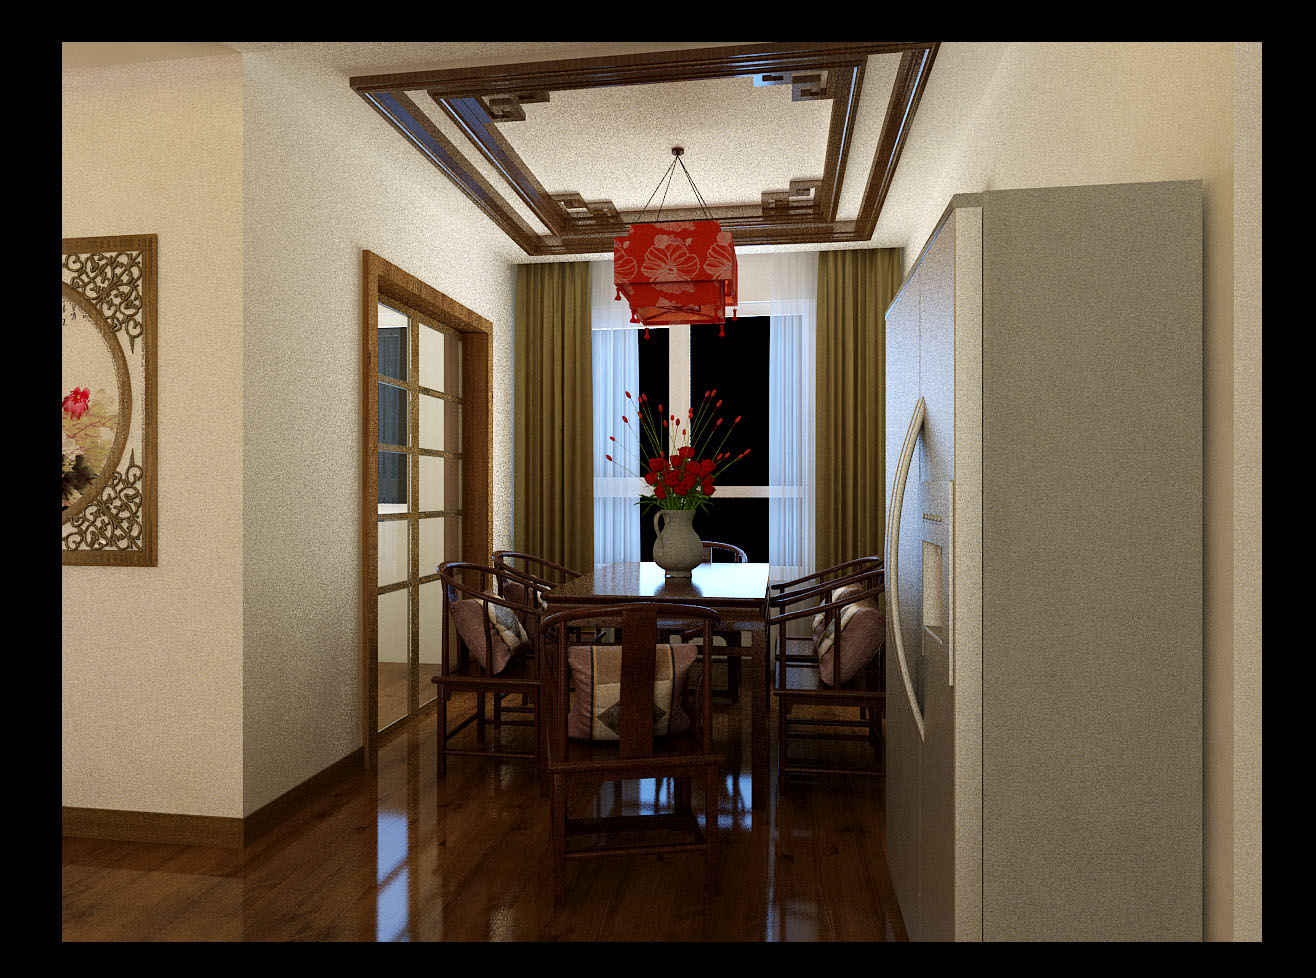 简约 现代 三居 家居 生活 风水 家庭装修 室内设计 装修报价 餐厅图片来自实创装饰集团广州公司在任千年的故事顺指间流淌。的分享